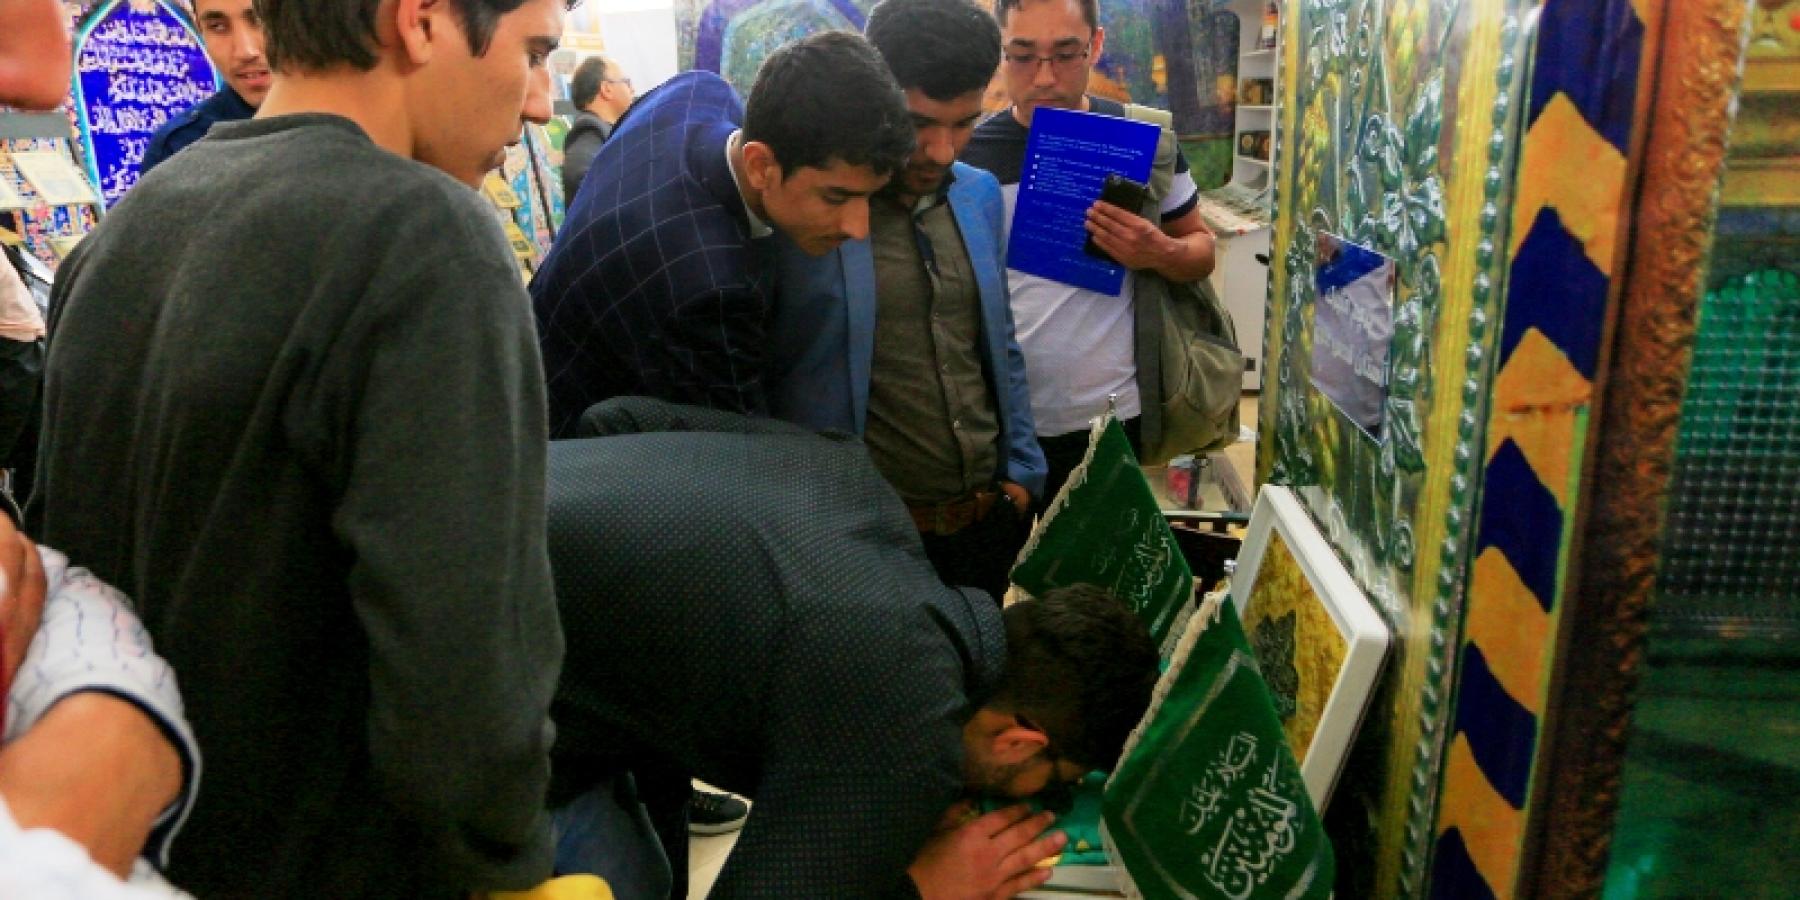 توافد رواد معرض طهران الدولي للكتاب للتبرك براية أمير المؤمنين (ع) في جناح العتبة العلوية 